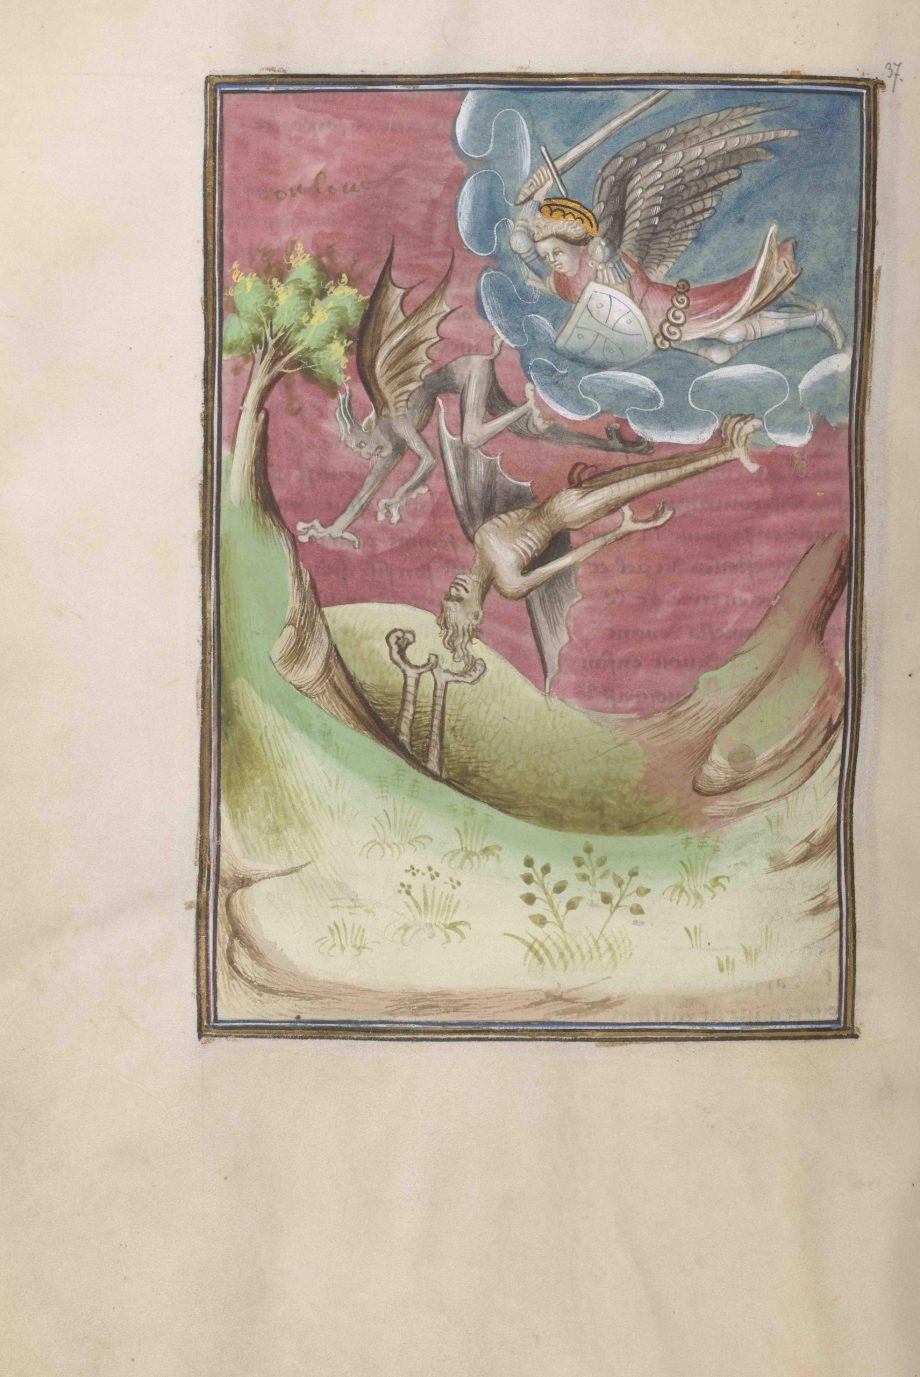 Folio 37 verso del manuscrito del Apocalipsis de Berry mostrando el arcángel San Miguel combatiendo a los demonios